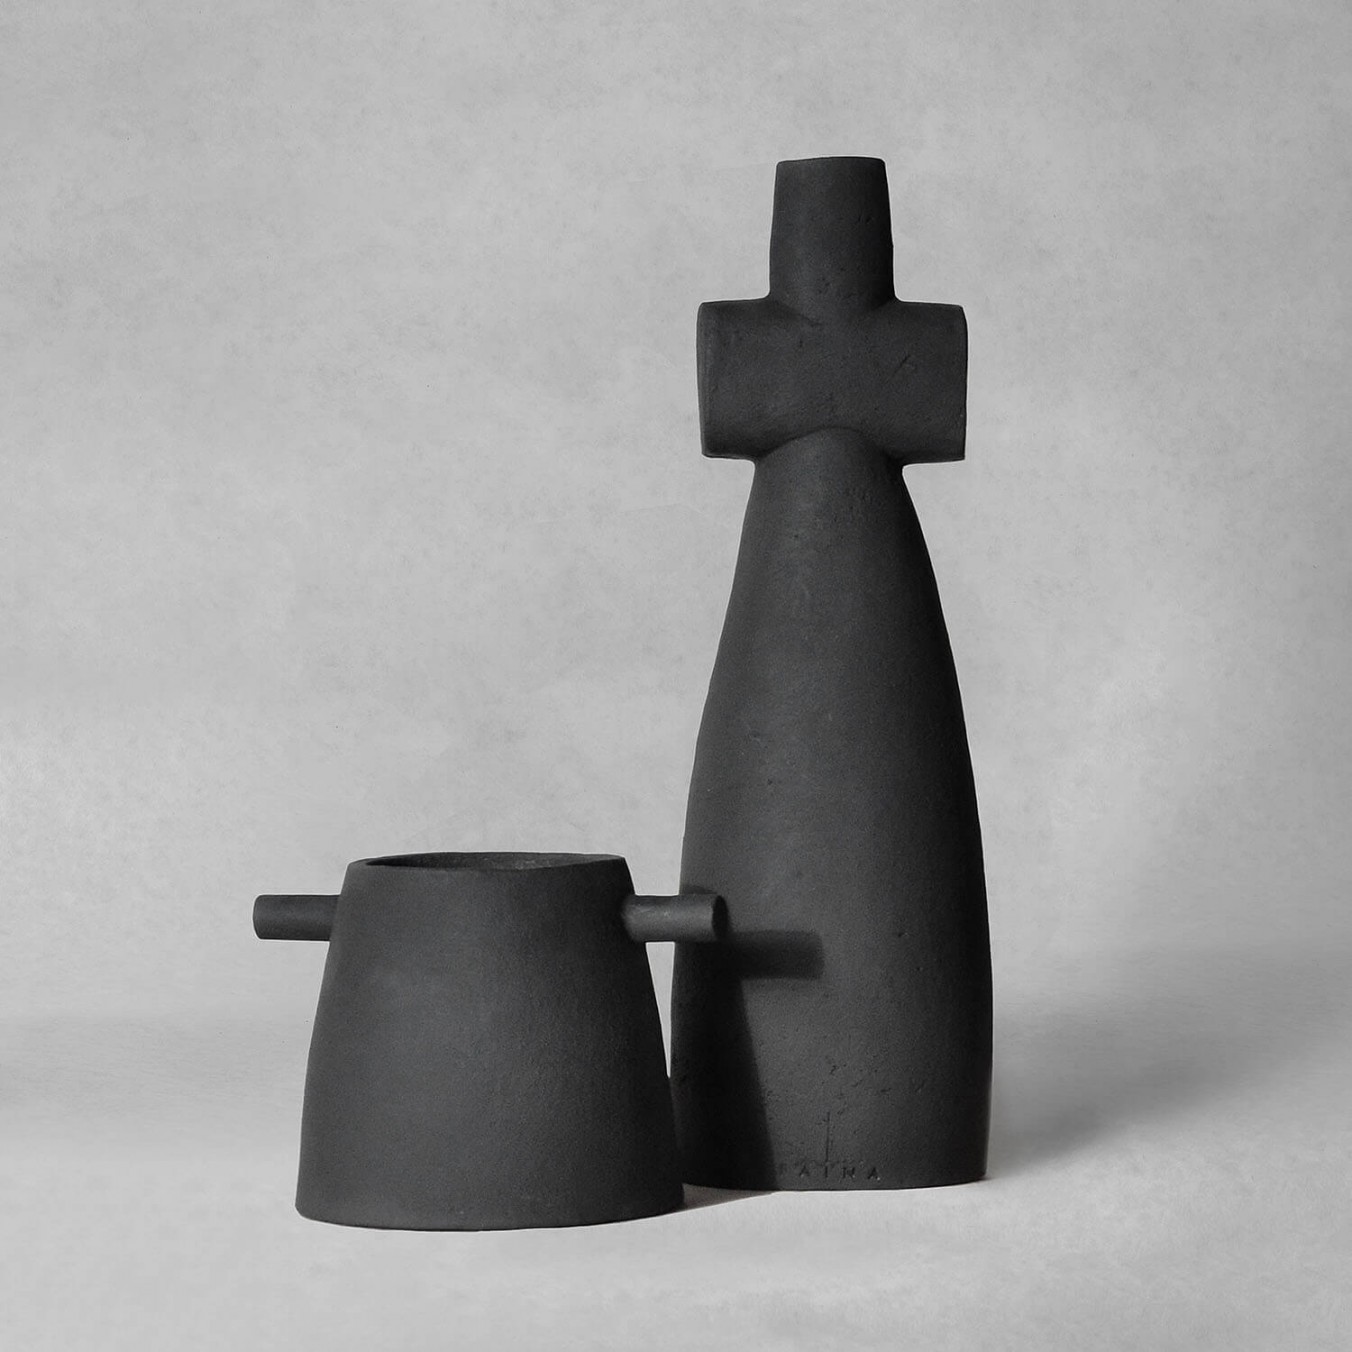 MOTANKA set of vases